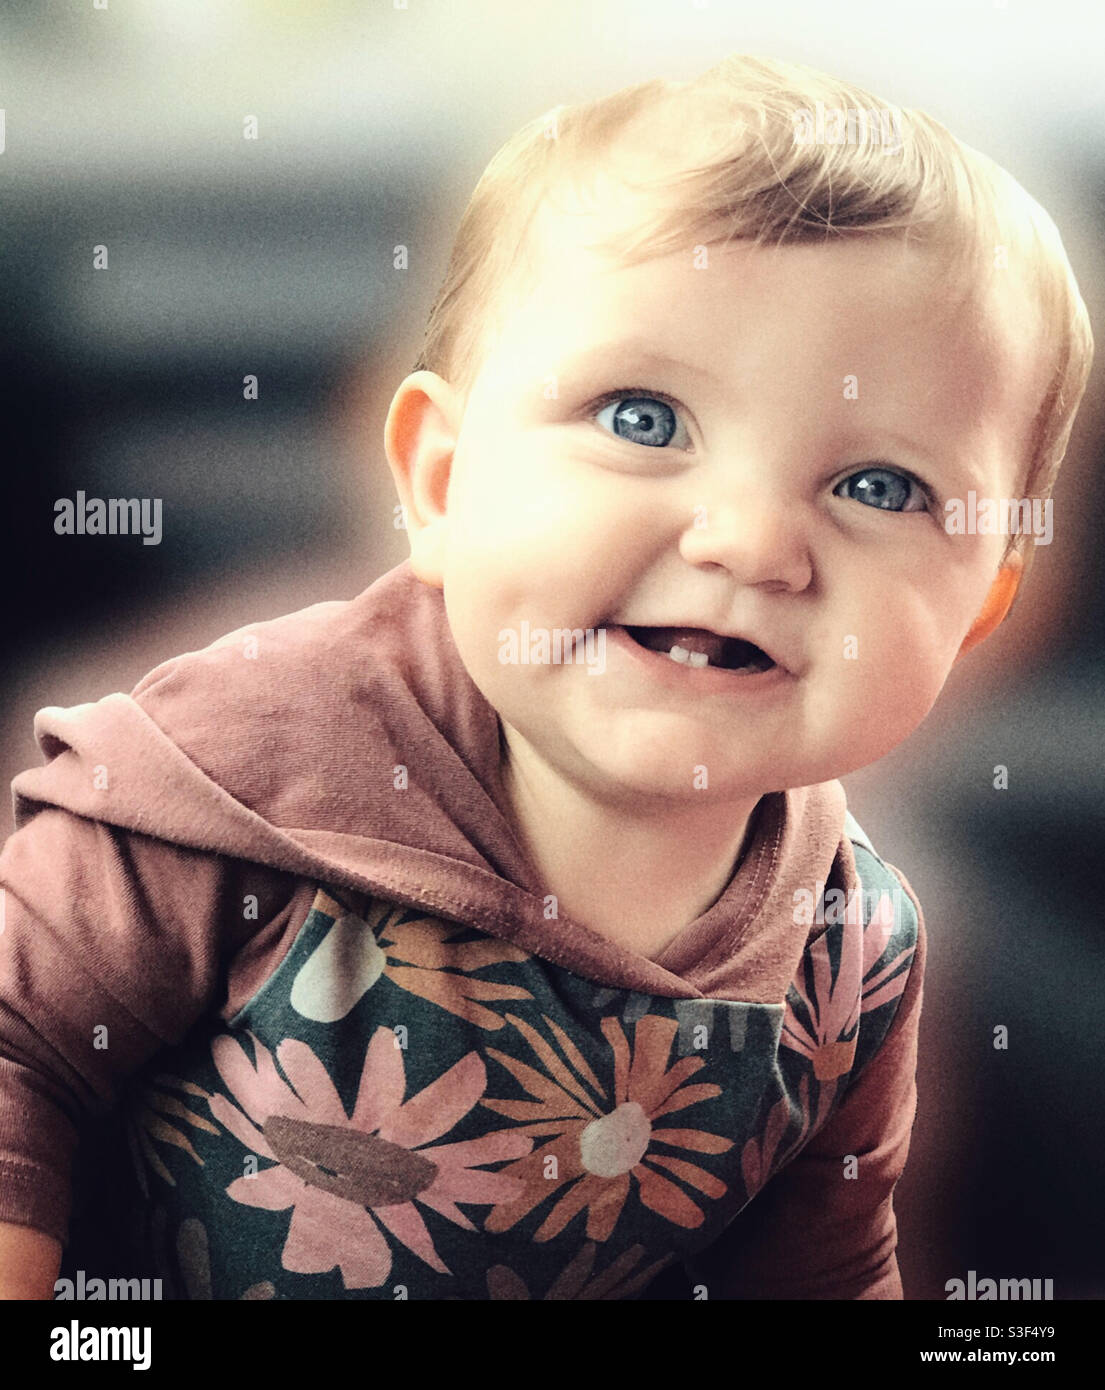 Retrato en color de un bebé de 9 meses que se está ordeñando con Sus dos dientes inferiores se muestran Foto de stock